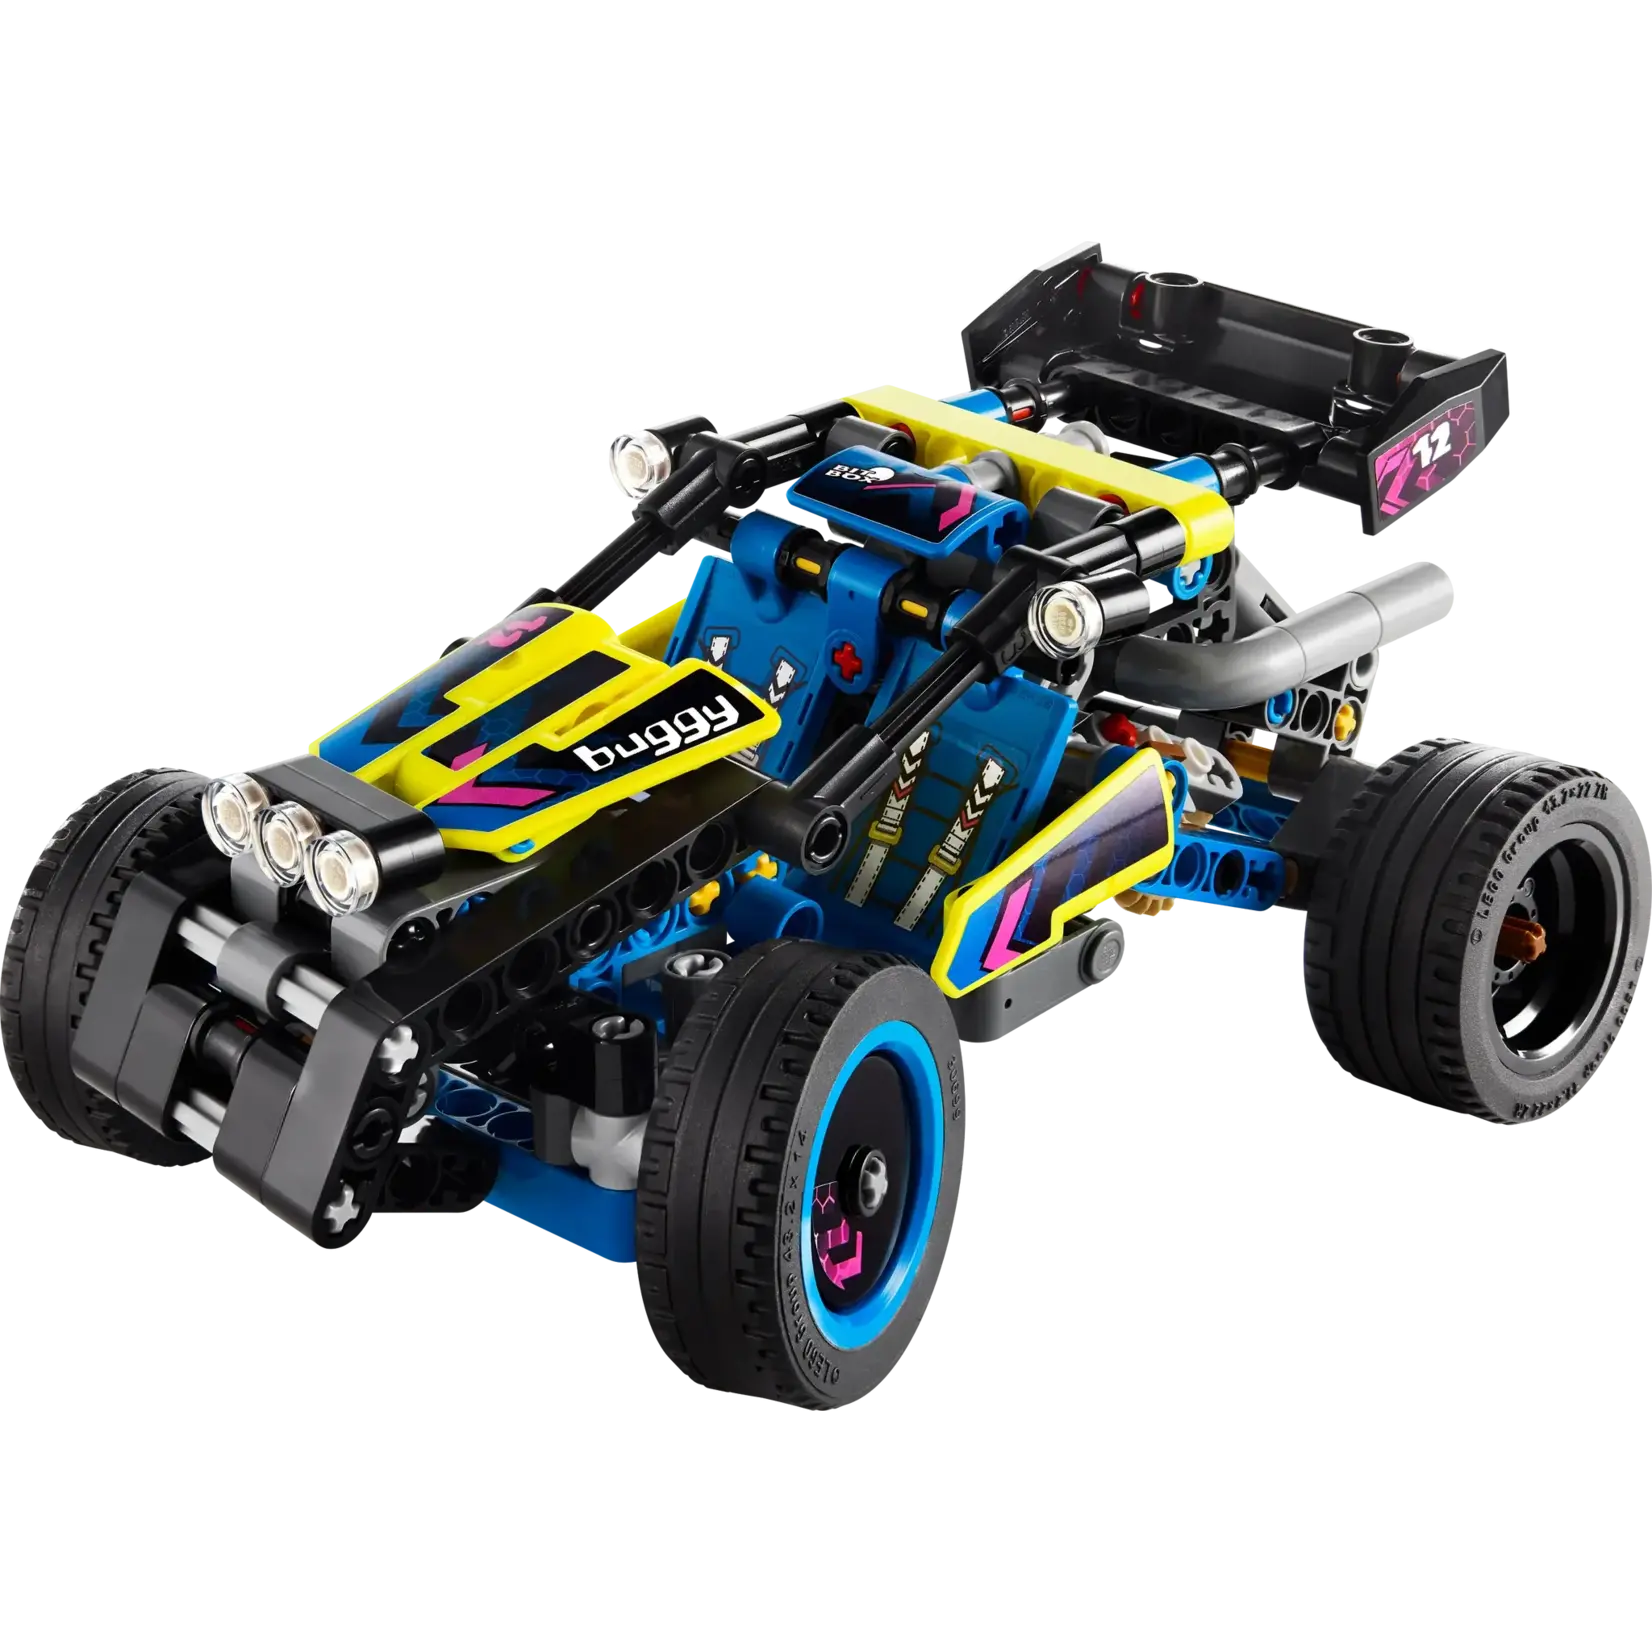 LEGO 42164 LEGO® Technic™ Off-Road Race Buggy